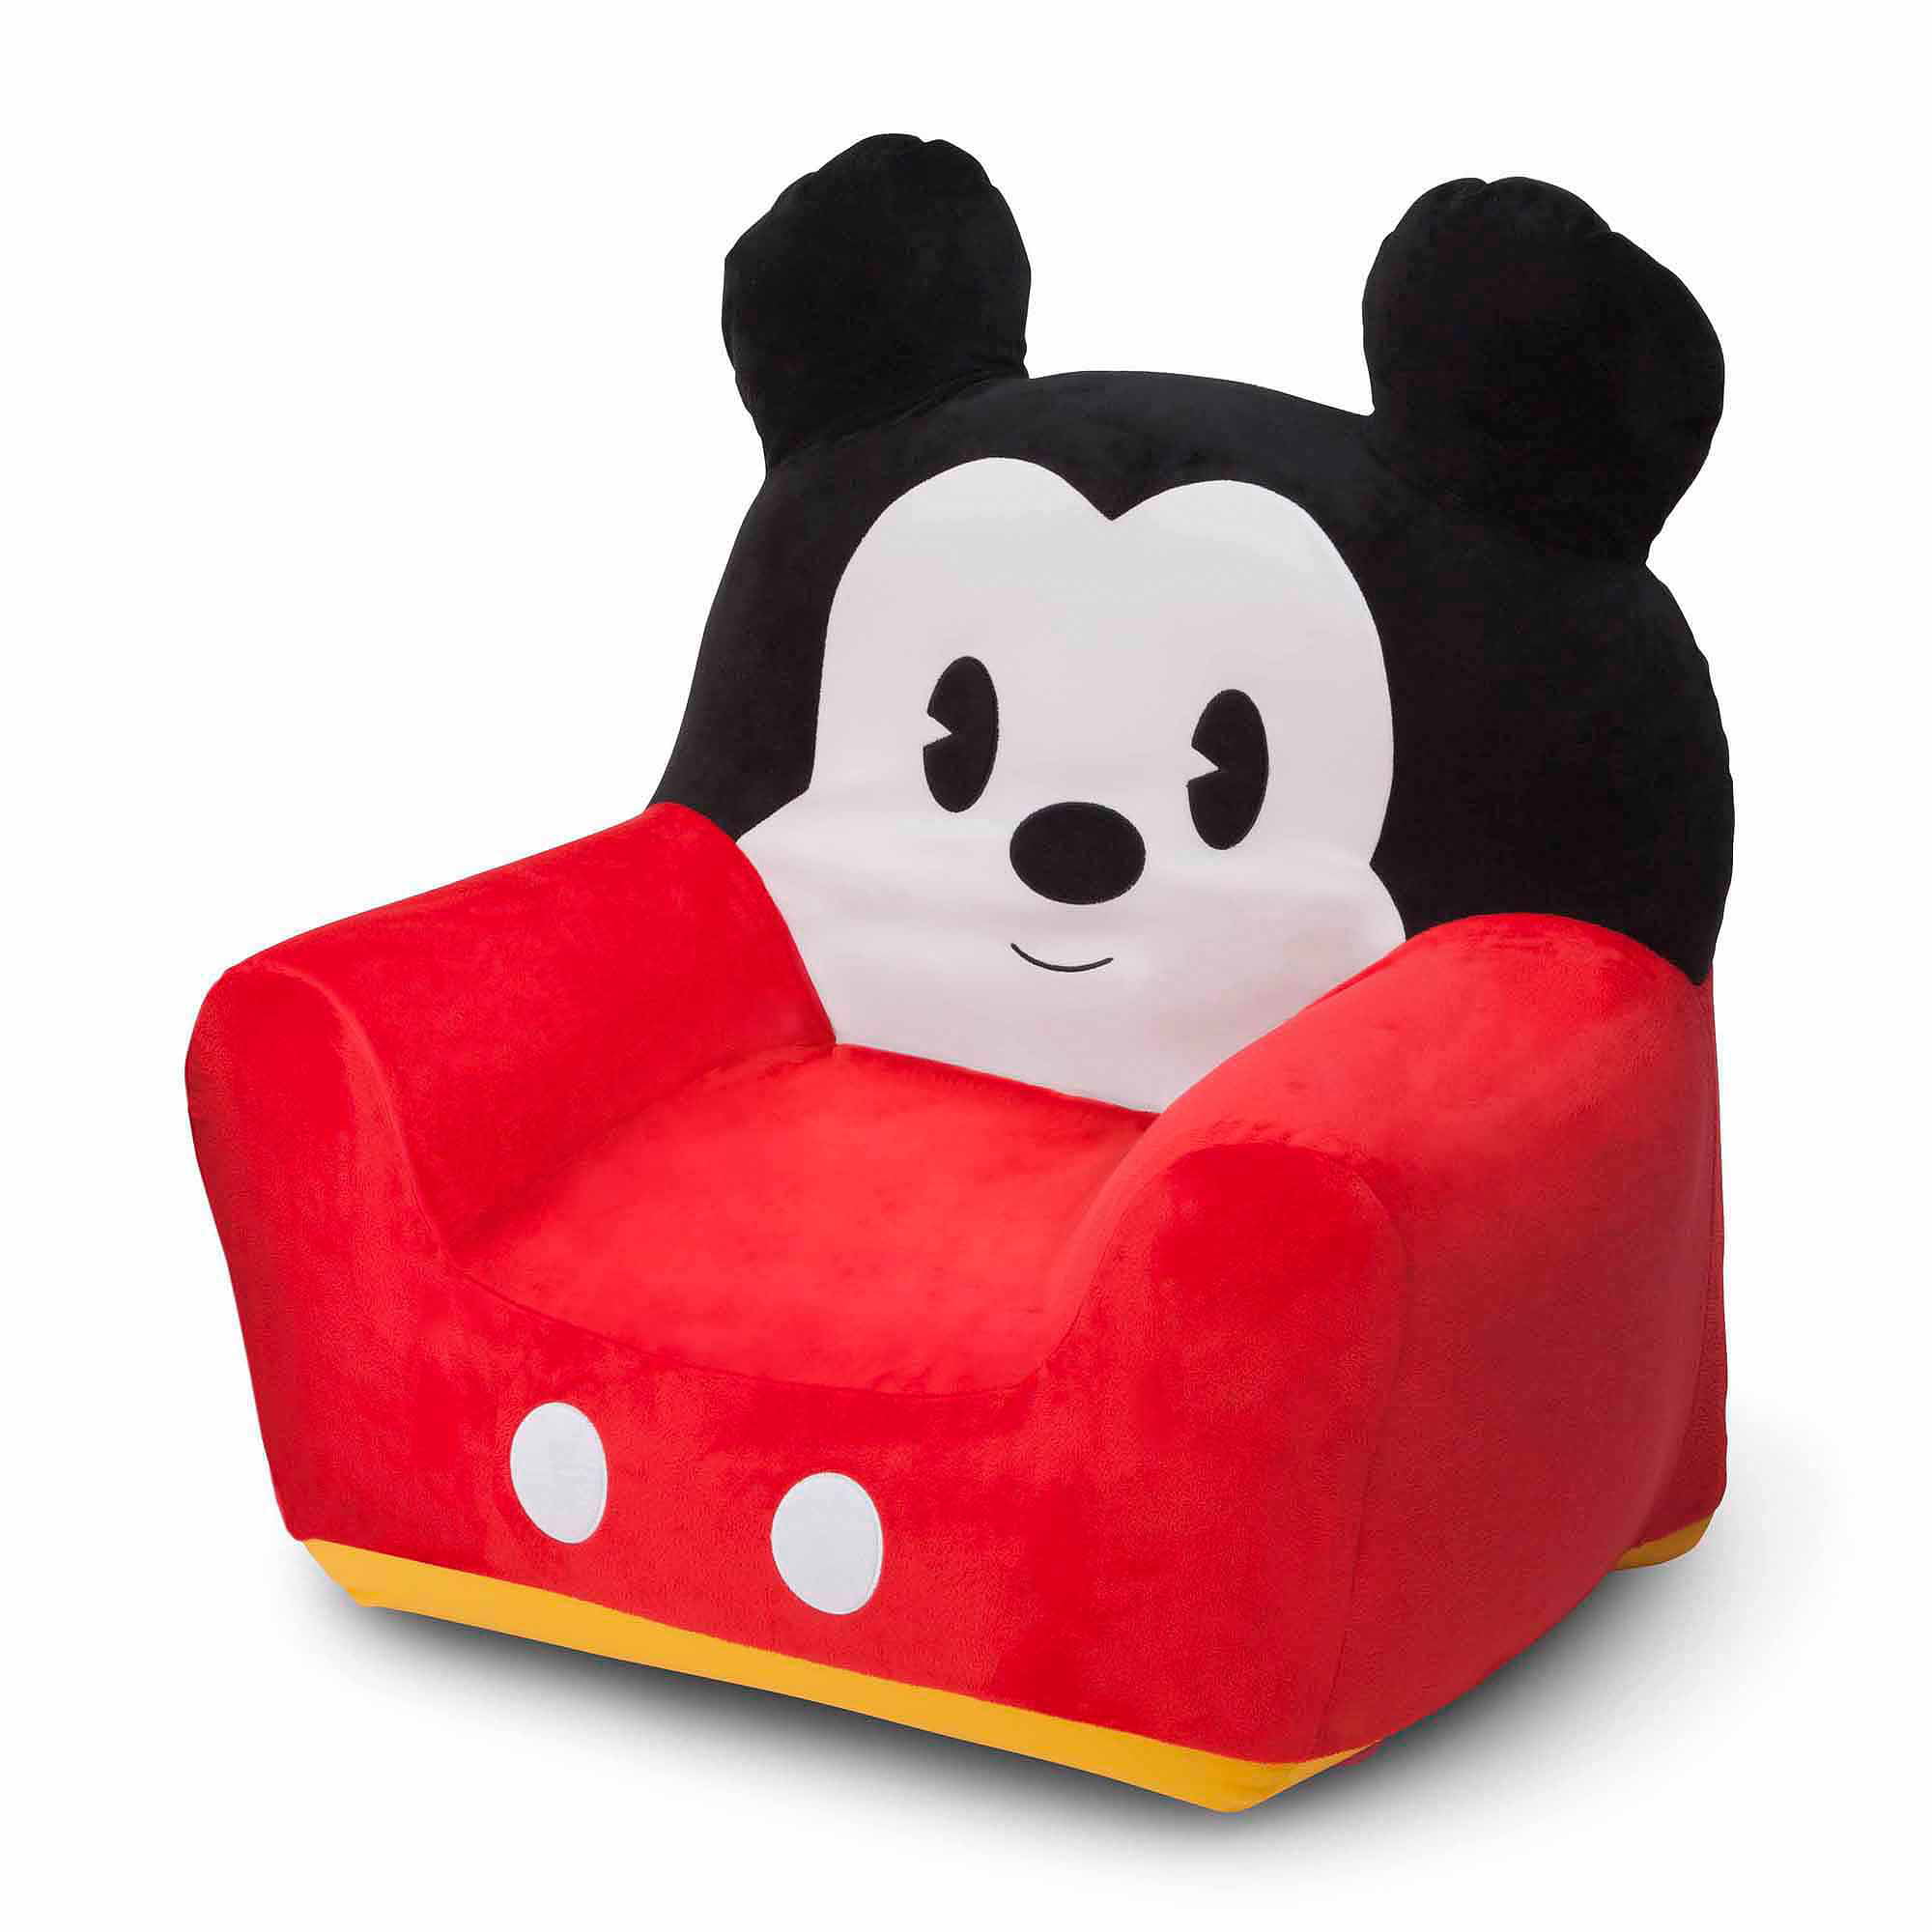 Minnie Mouse Square Bean Bag Chair